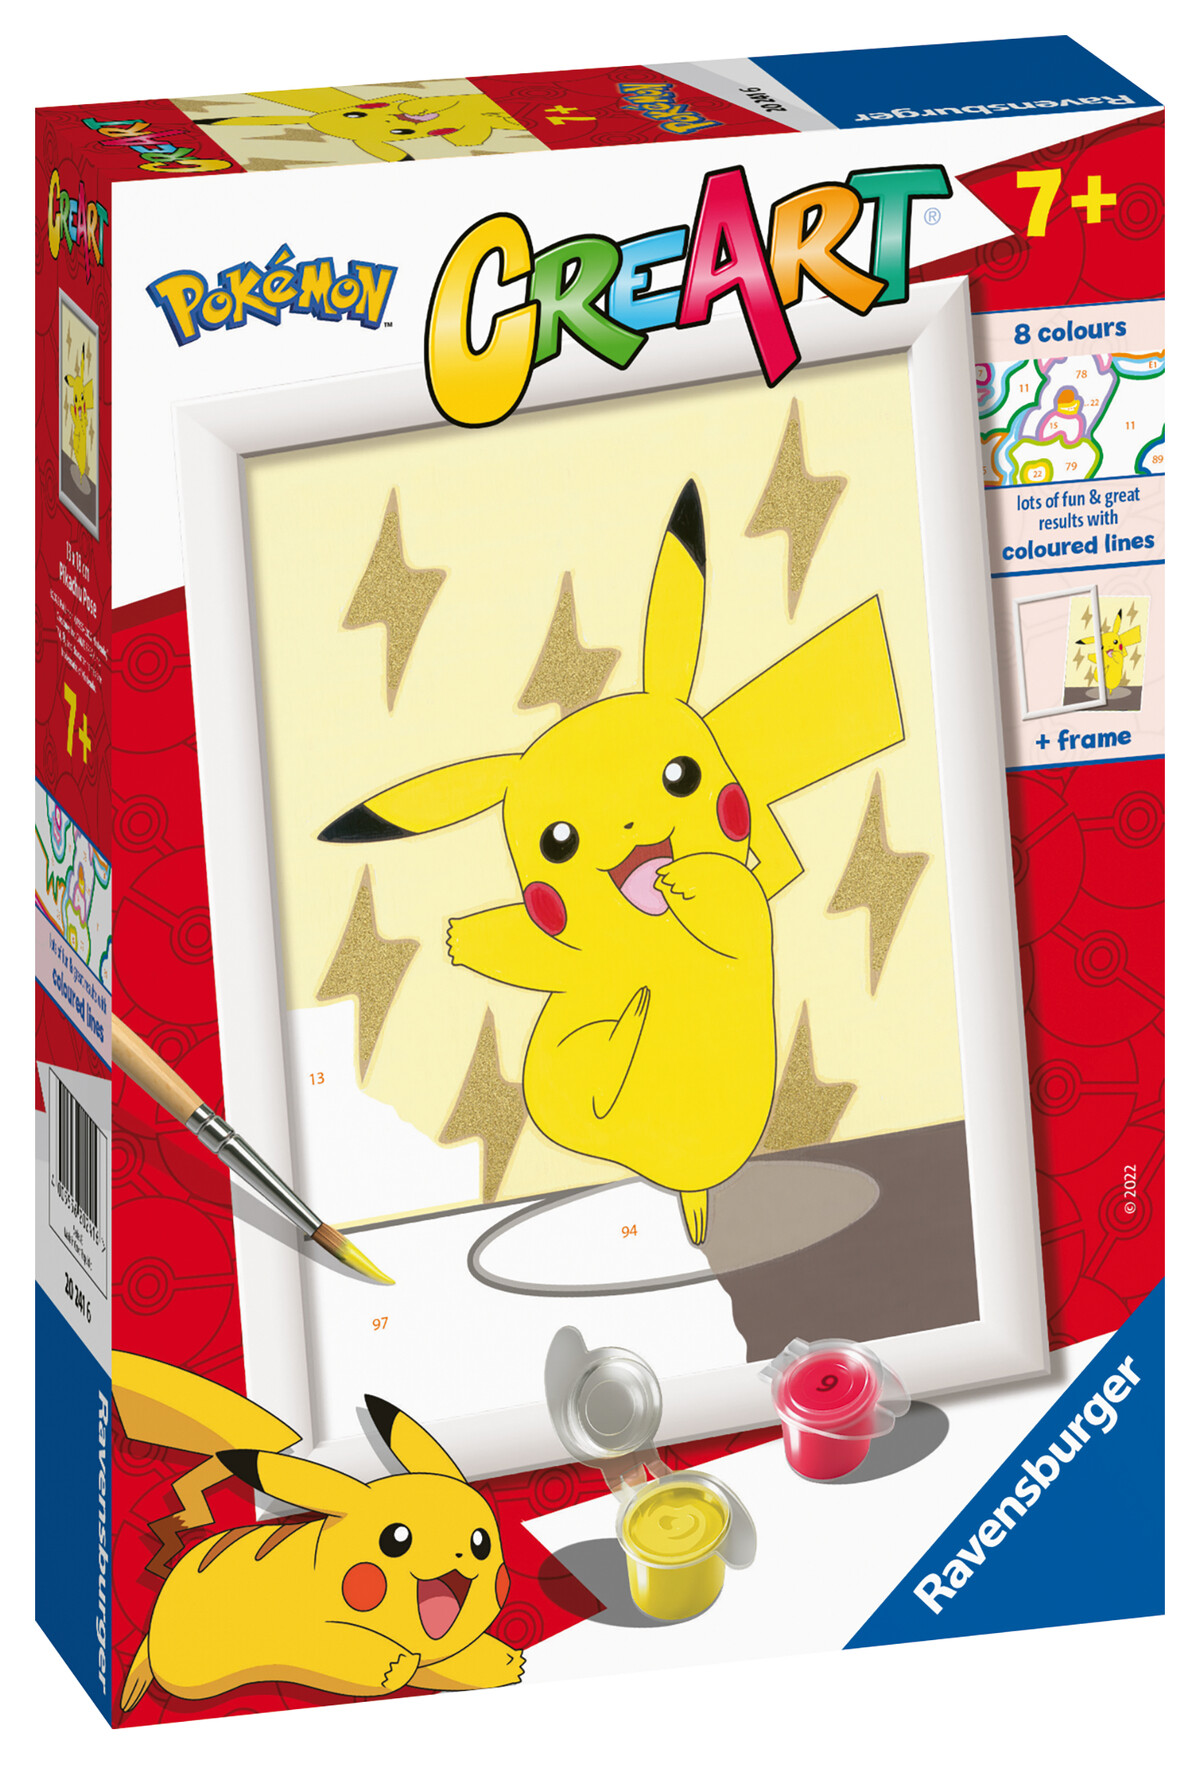 Ravensburger - creart serie e: pokémon, pikachu, kit per dipingere con i numeri, contiene una tavola prestampata, pennello, colori e accessori, gioco creativo per bambini 7+ anni - CREART, POKEMON